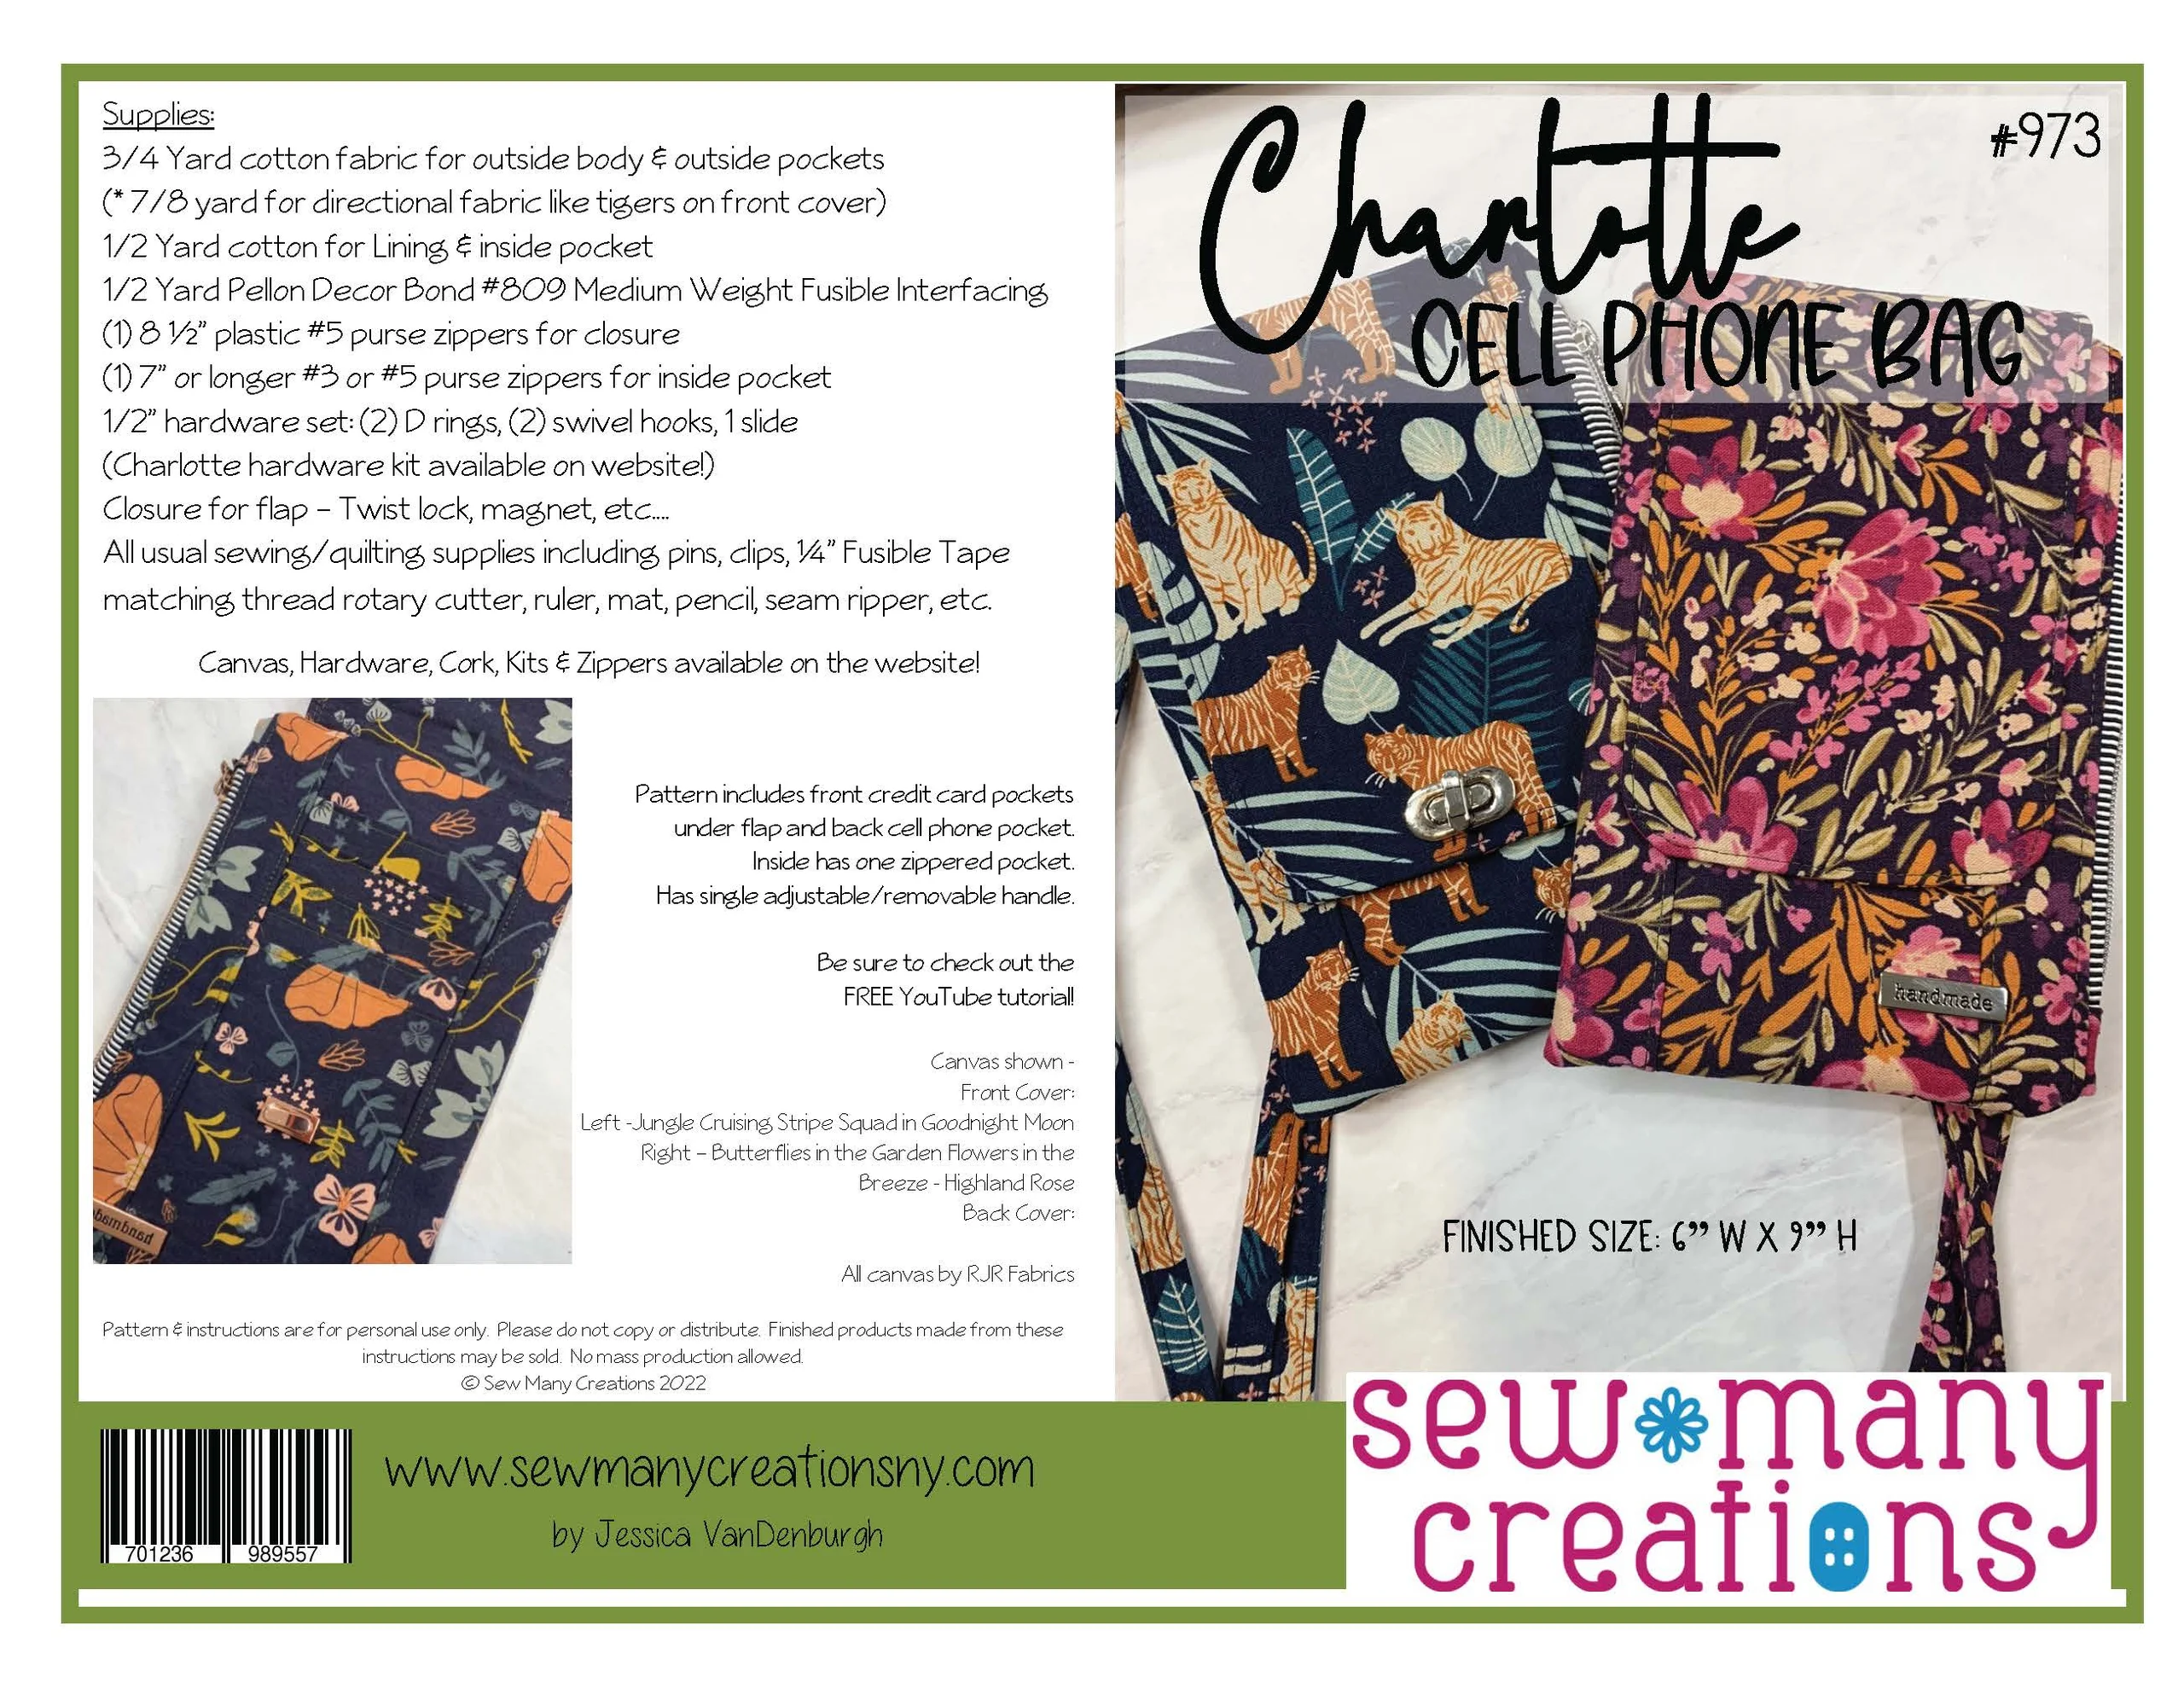 Charlotte Cell Phone Bag Hardware Kit